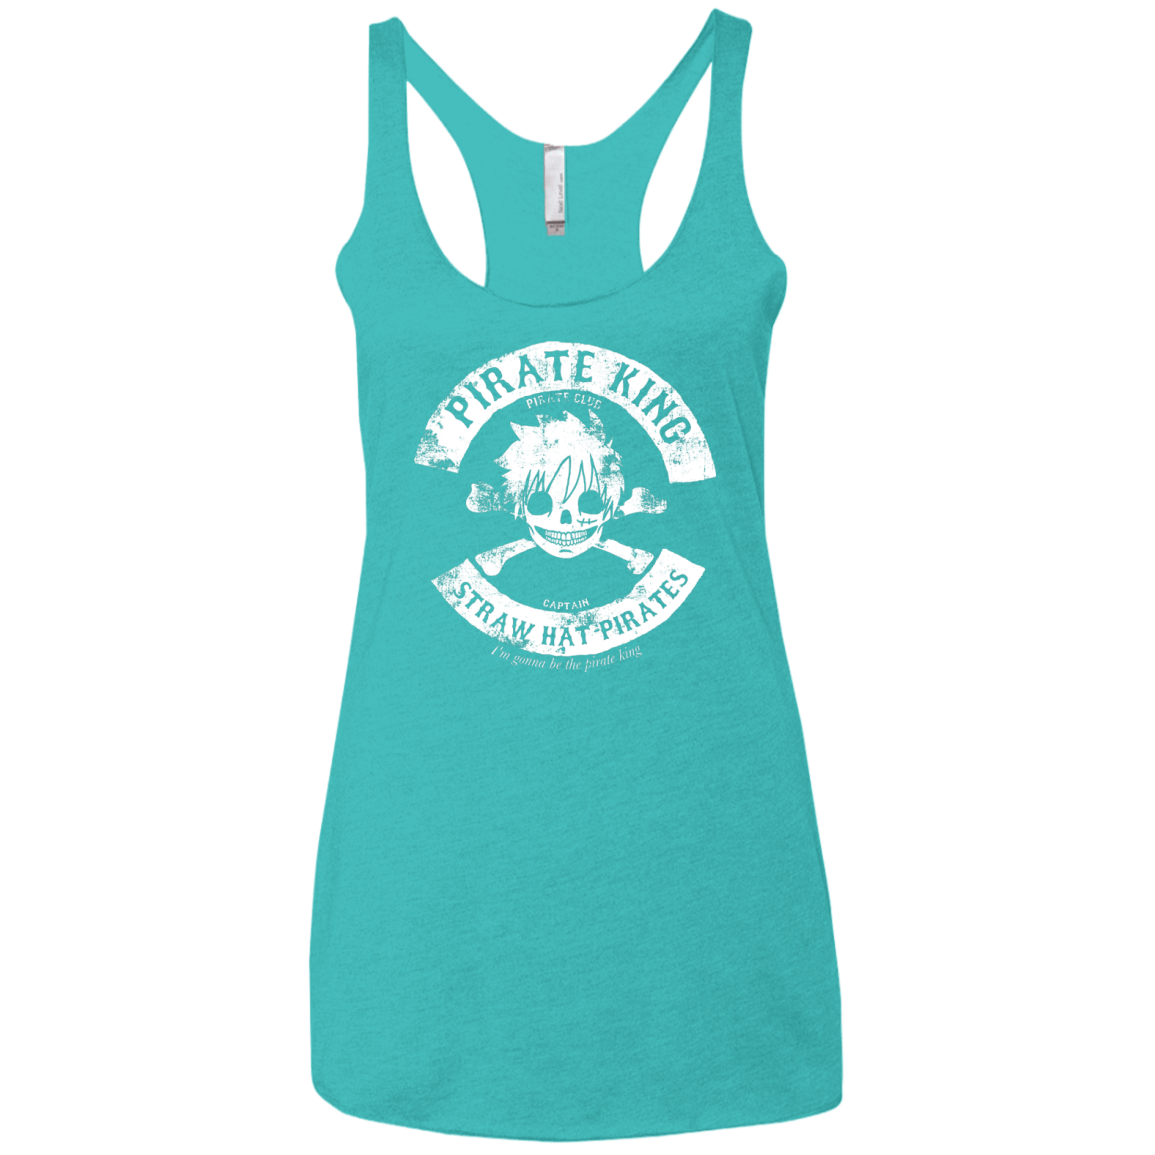 T-Shirts Tahiti Blue / X-Small Pirate King Skull Women's Triblend Racerback Tank